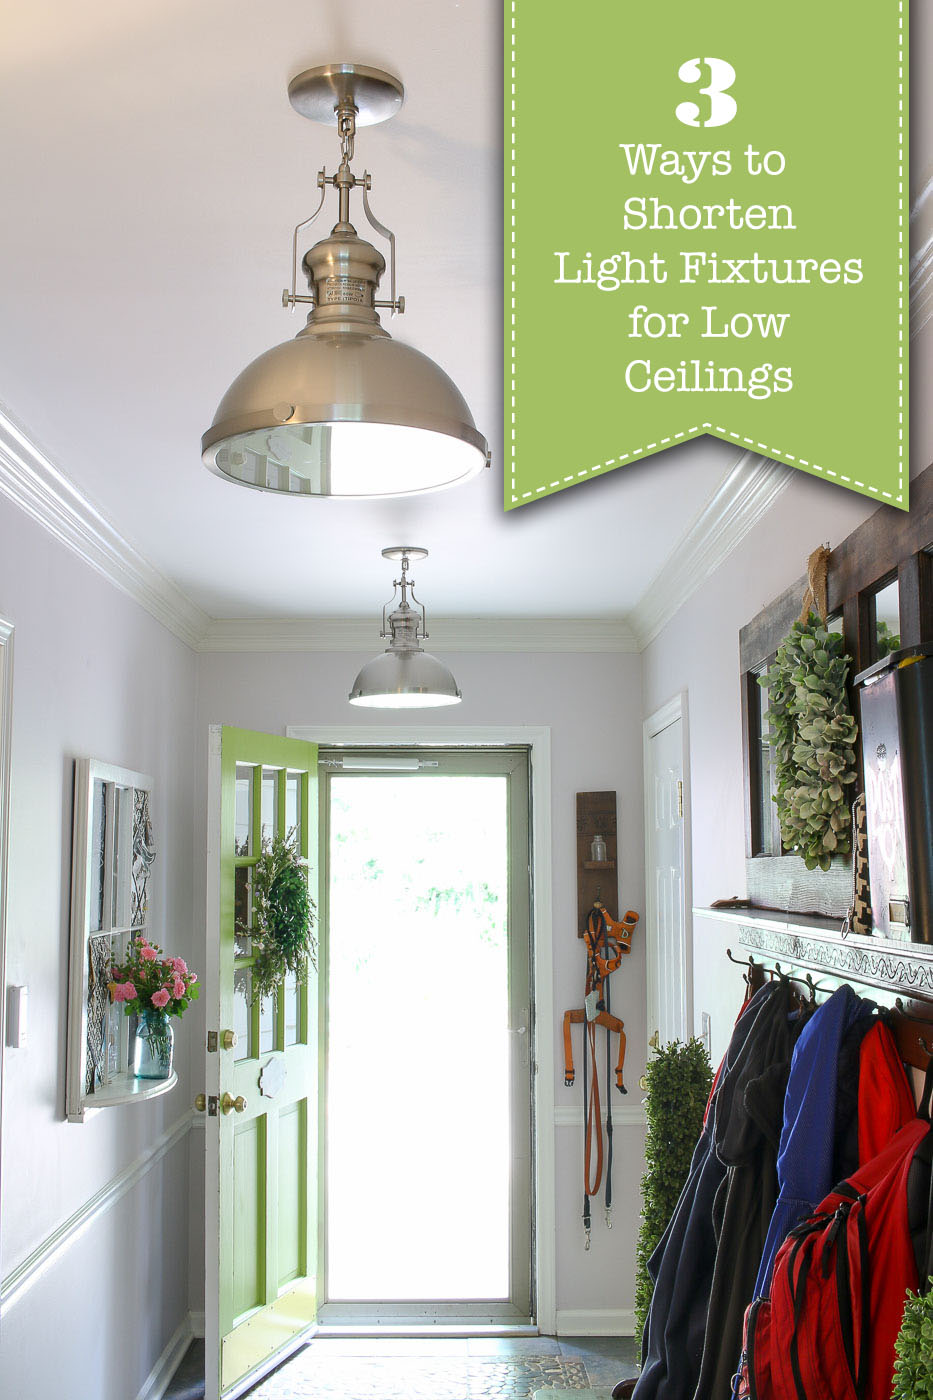 3 Ways to Shorten Light Fixtures for Low Ceilings